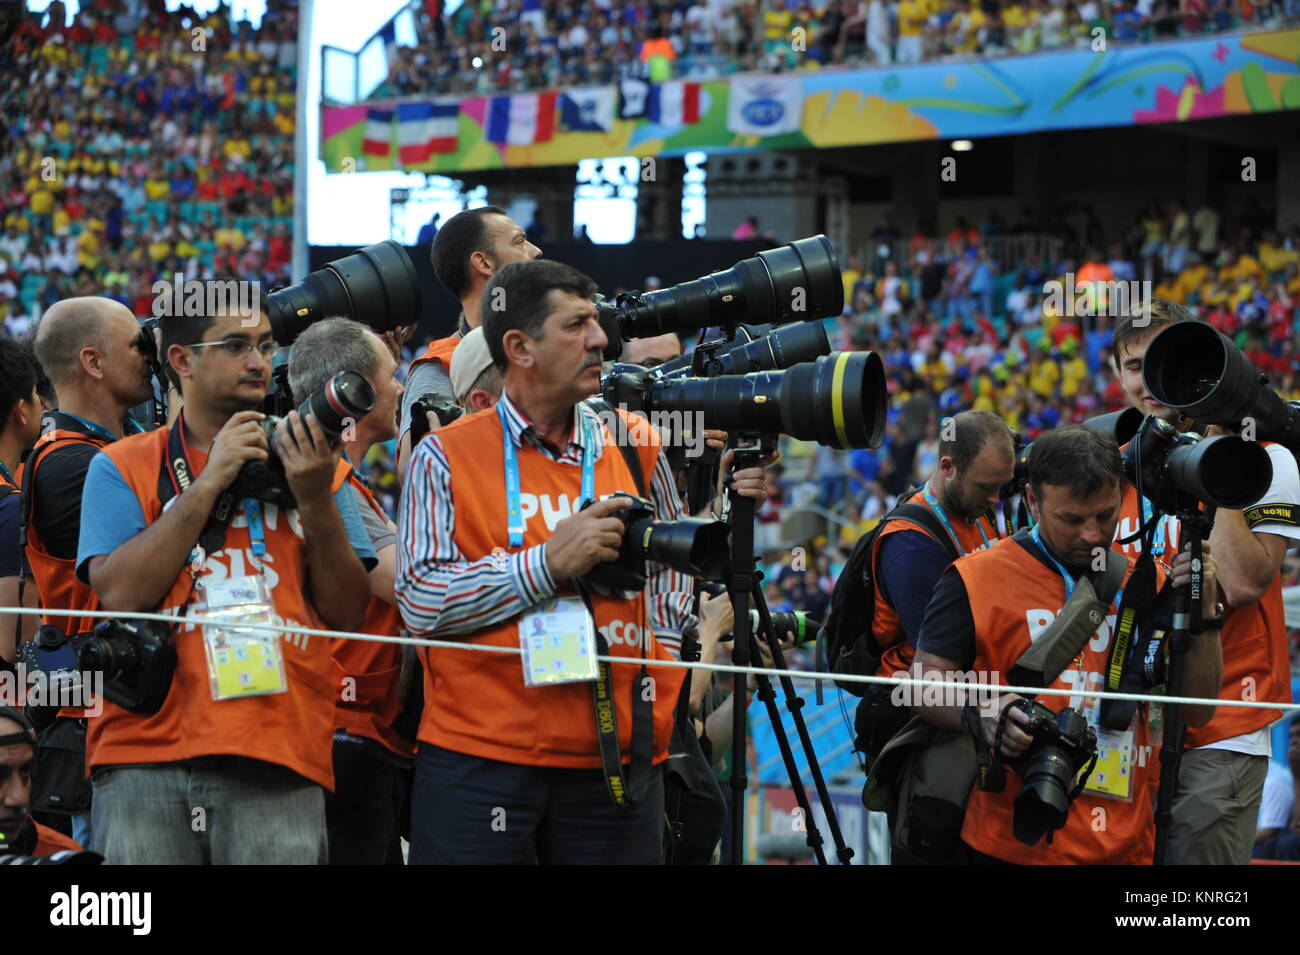 Coupe du Monde FIFA 2014, Salvador da Bahia, Brésil : Les photographes au travail Banque D'Images